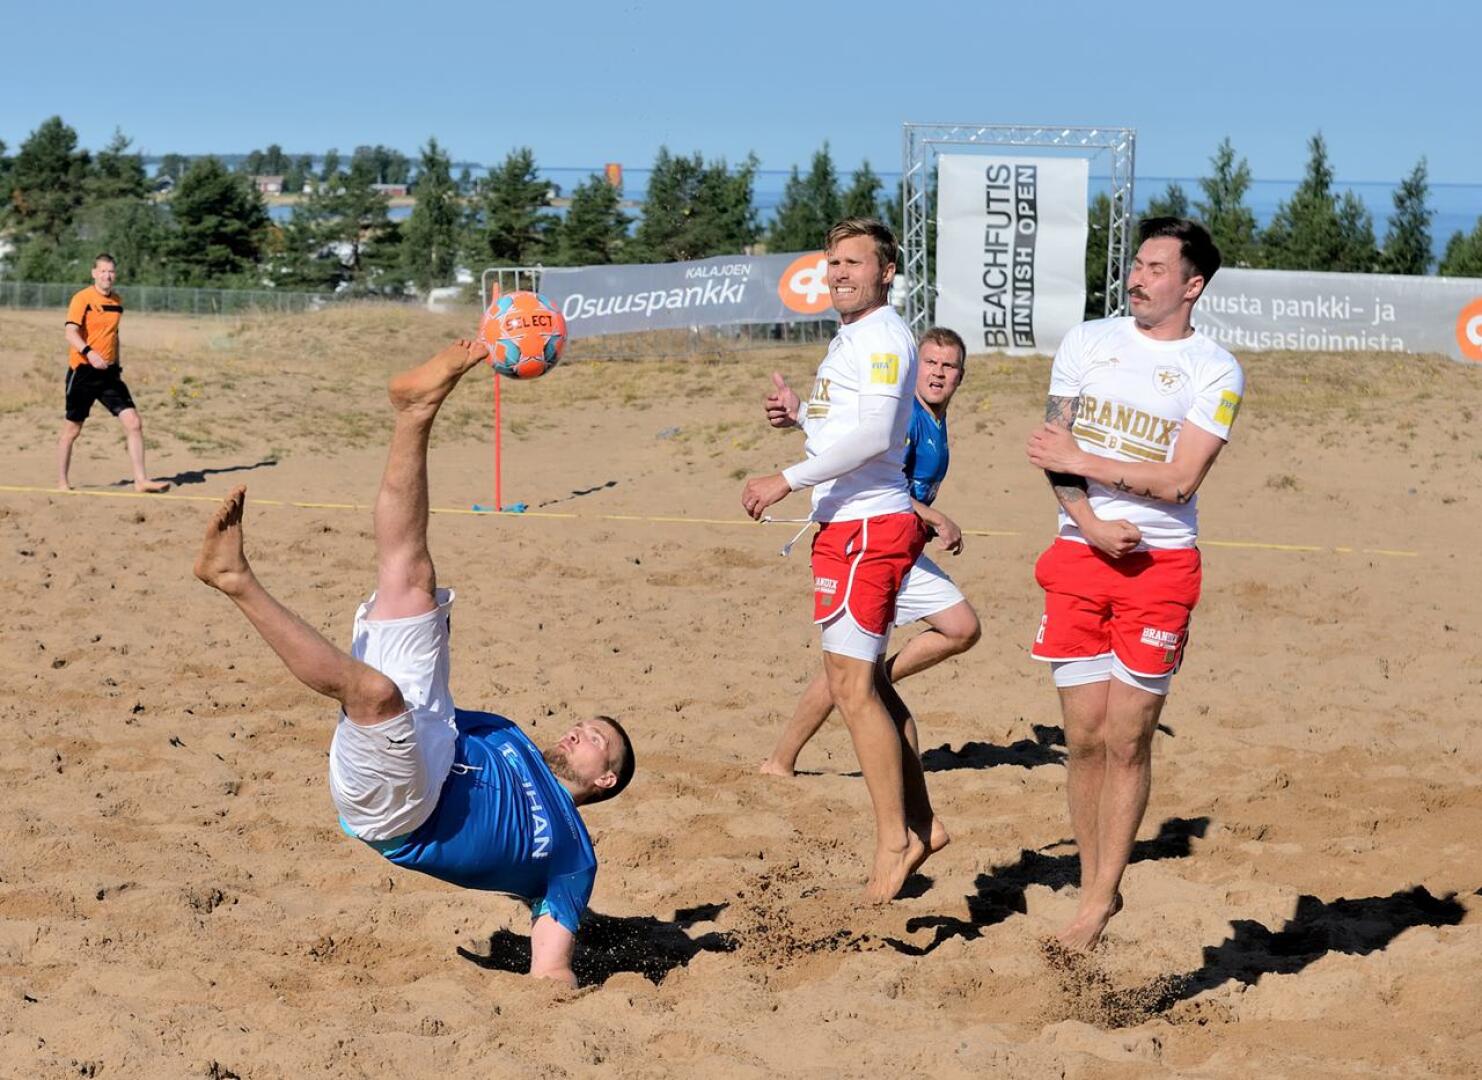 Beachfutis Finnish Open 2020 järjestettiin tulevan kesän tavoin heinäkuun loppupuolella.